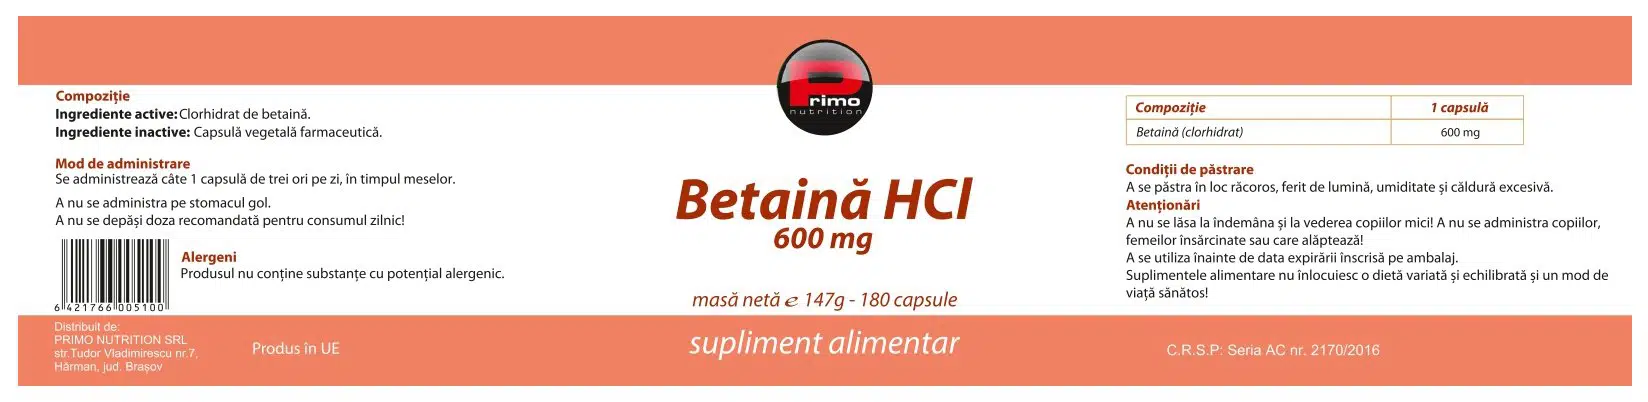 betaina hci betaina hidroclorica